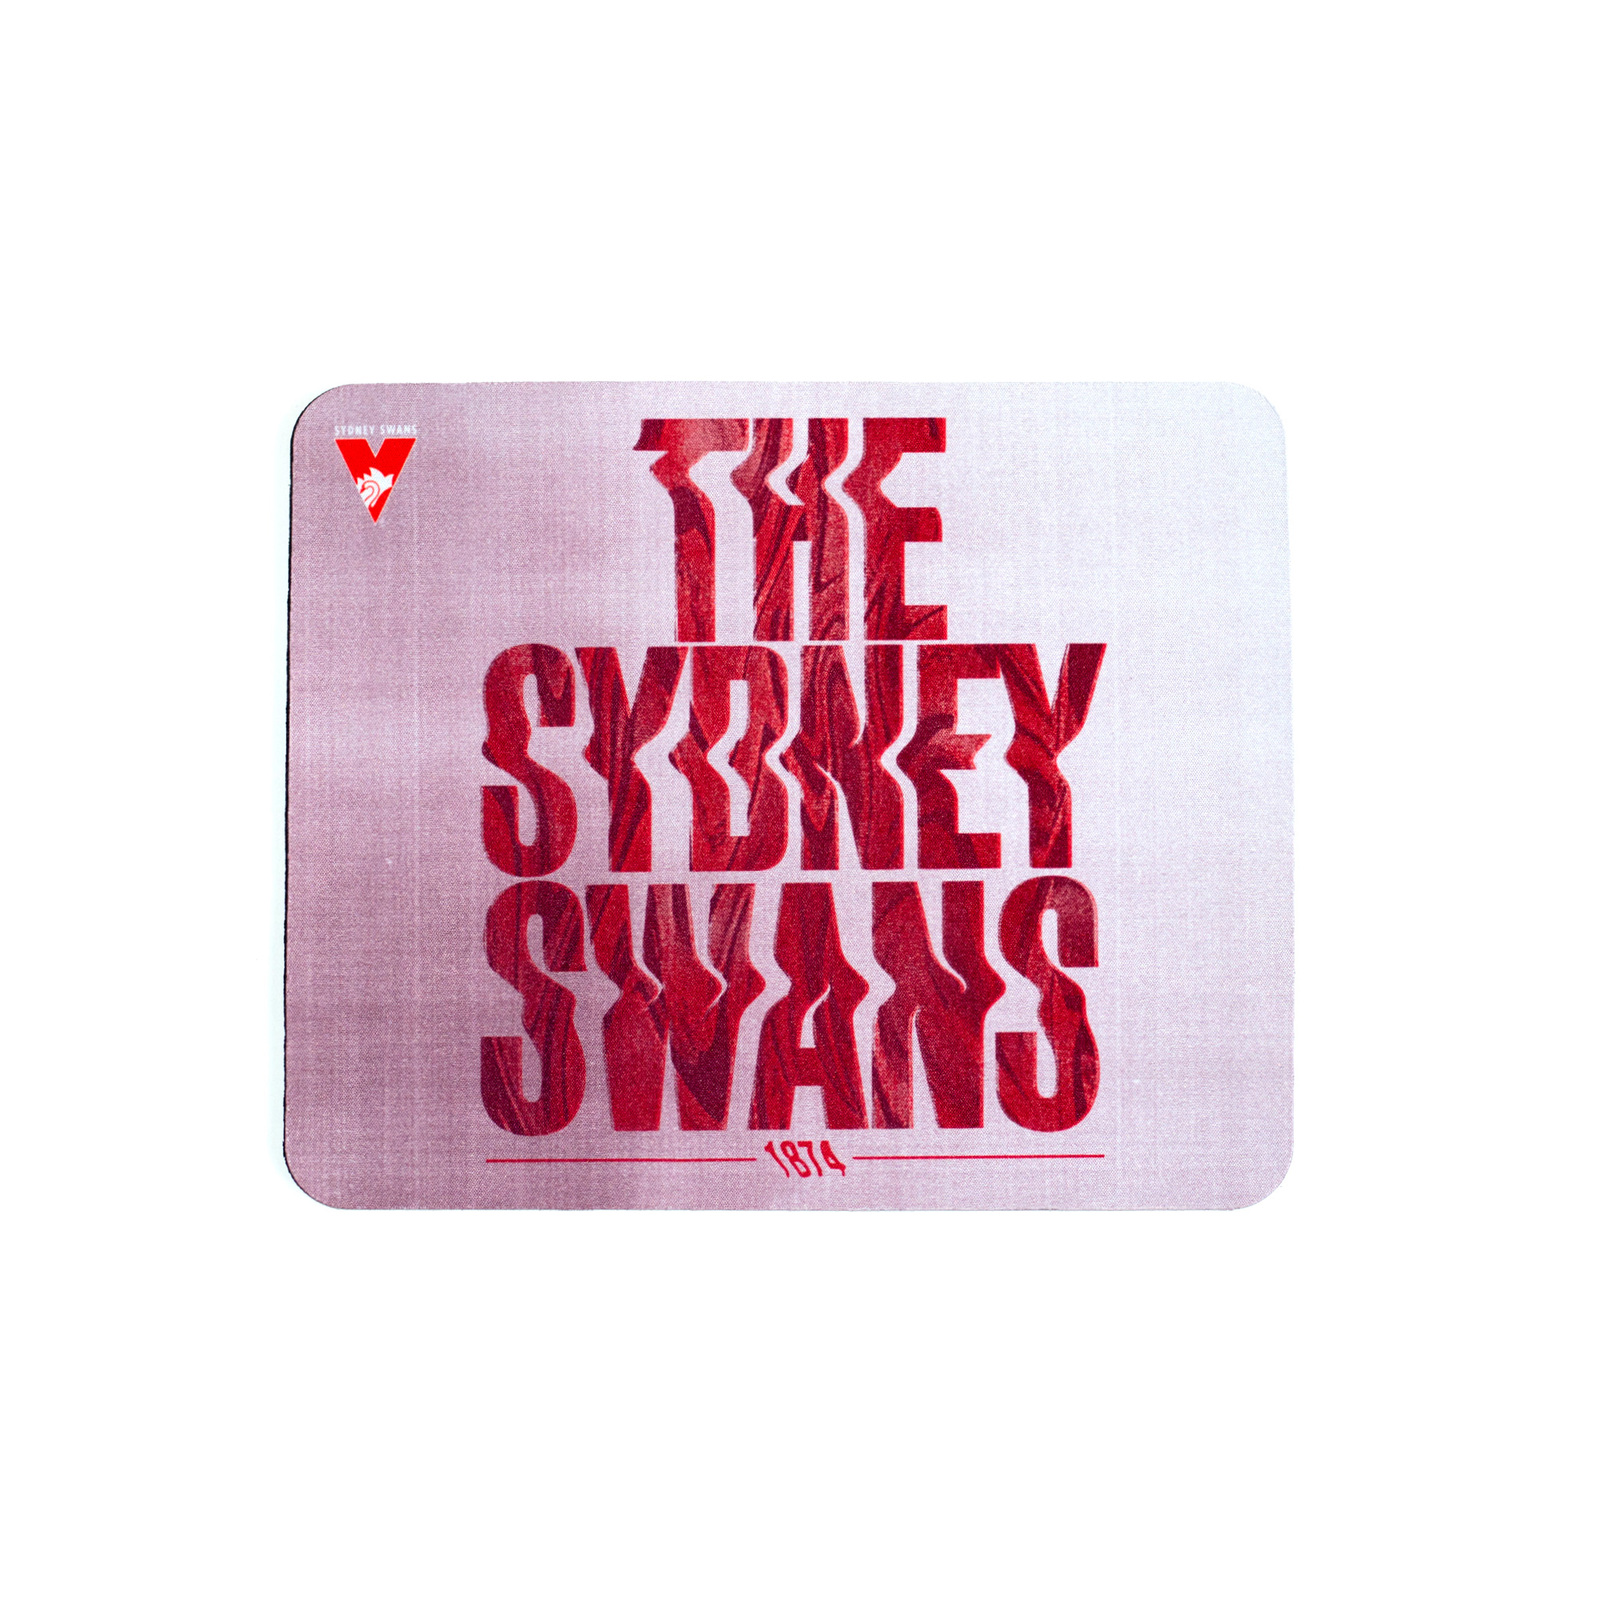 Aussie Rules Sydney Swans 18cm x 22cm AFL Mouse Pad Team Logo 